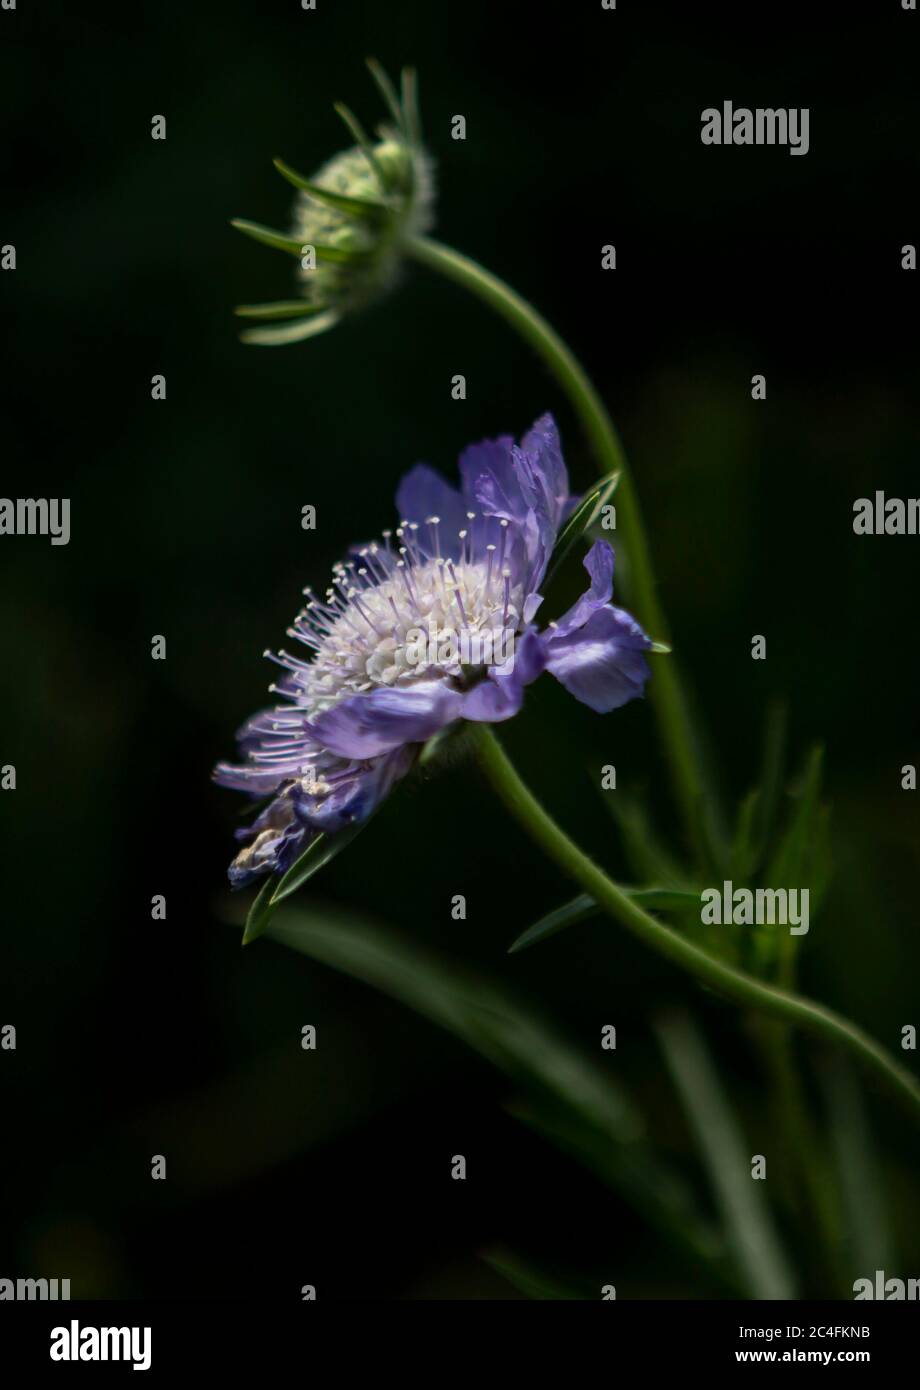 Primo piano dettaglio di fiore viola con sfondo nero Foto Stock